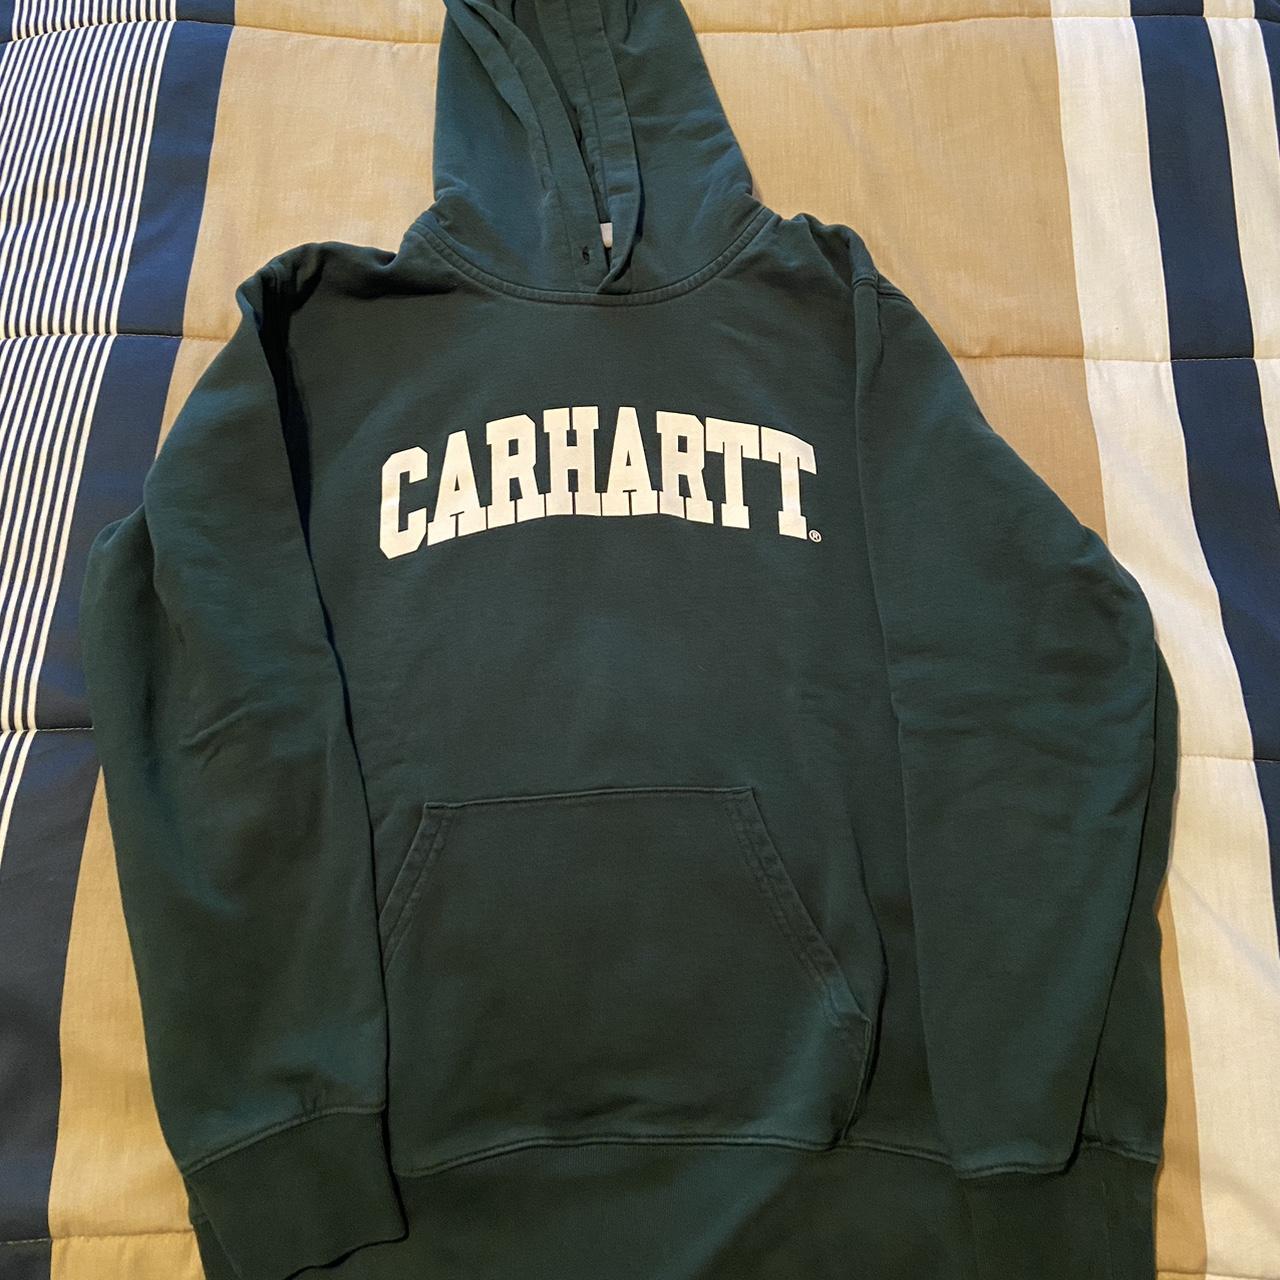 Carhartt WIP Hoodie - College Style - MSRP $110... - Depop